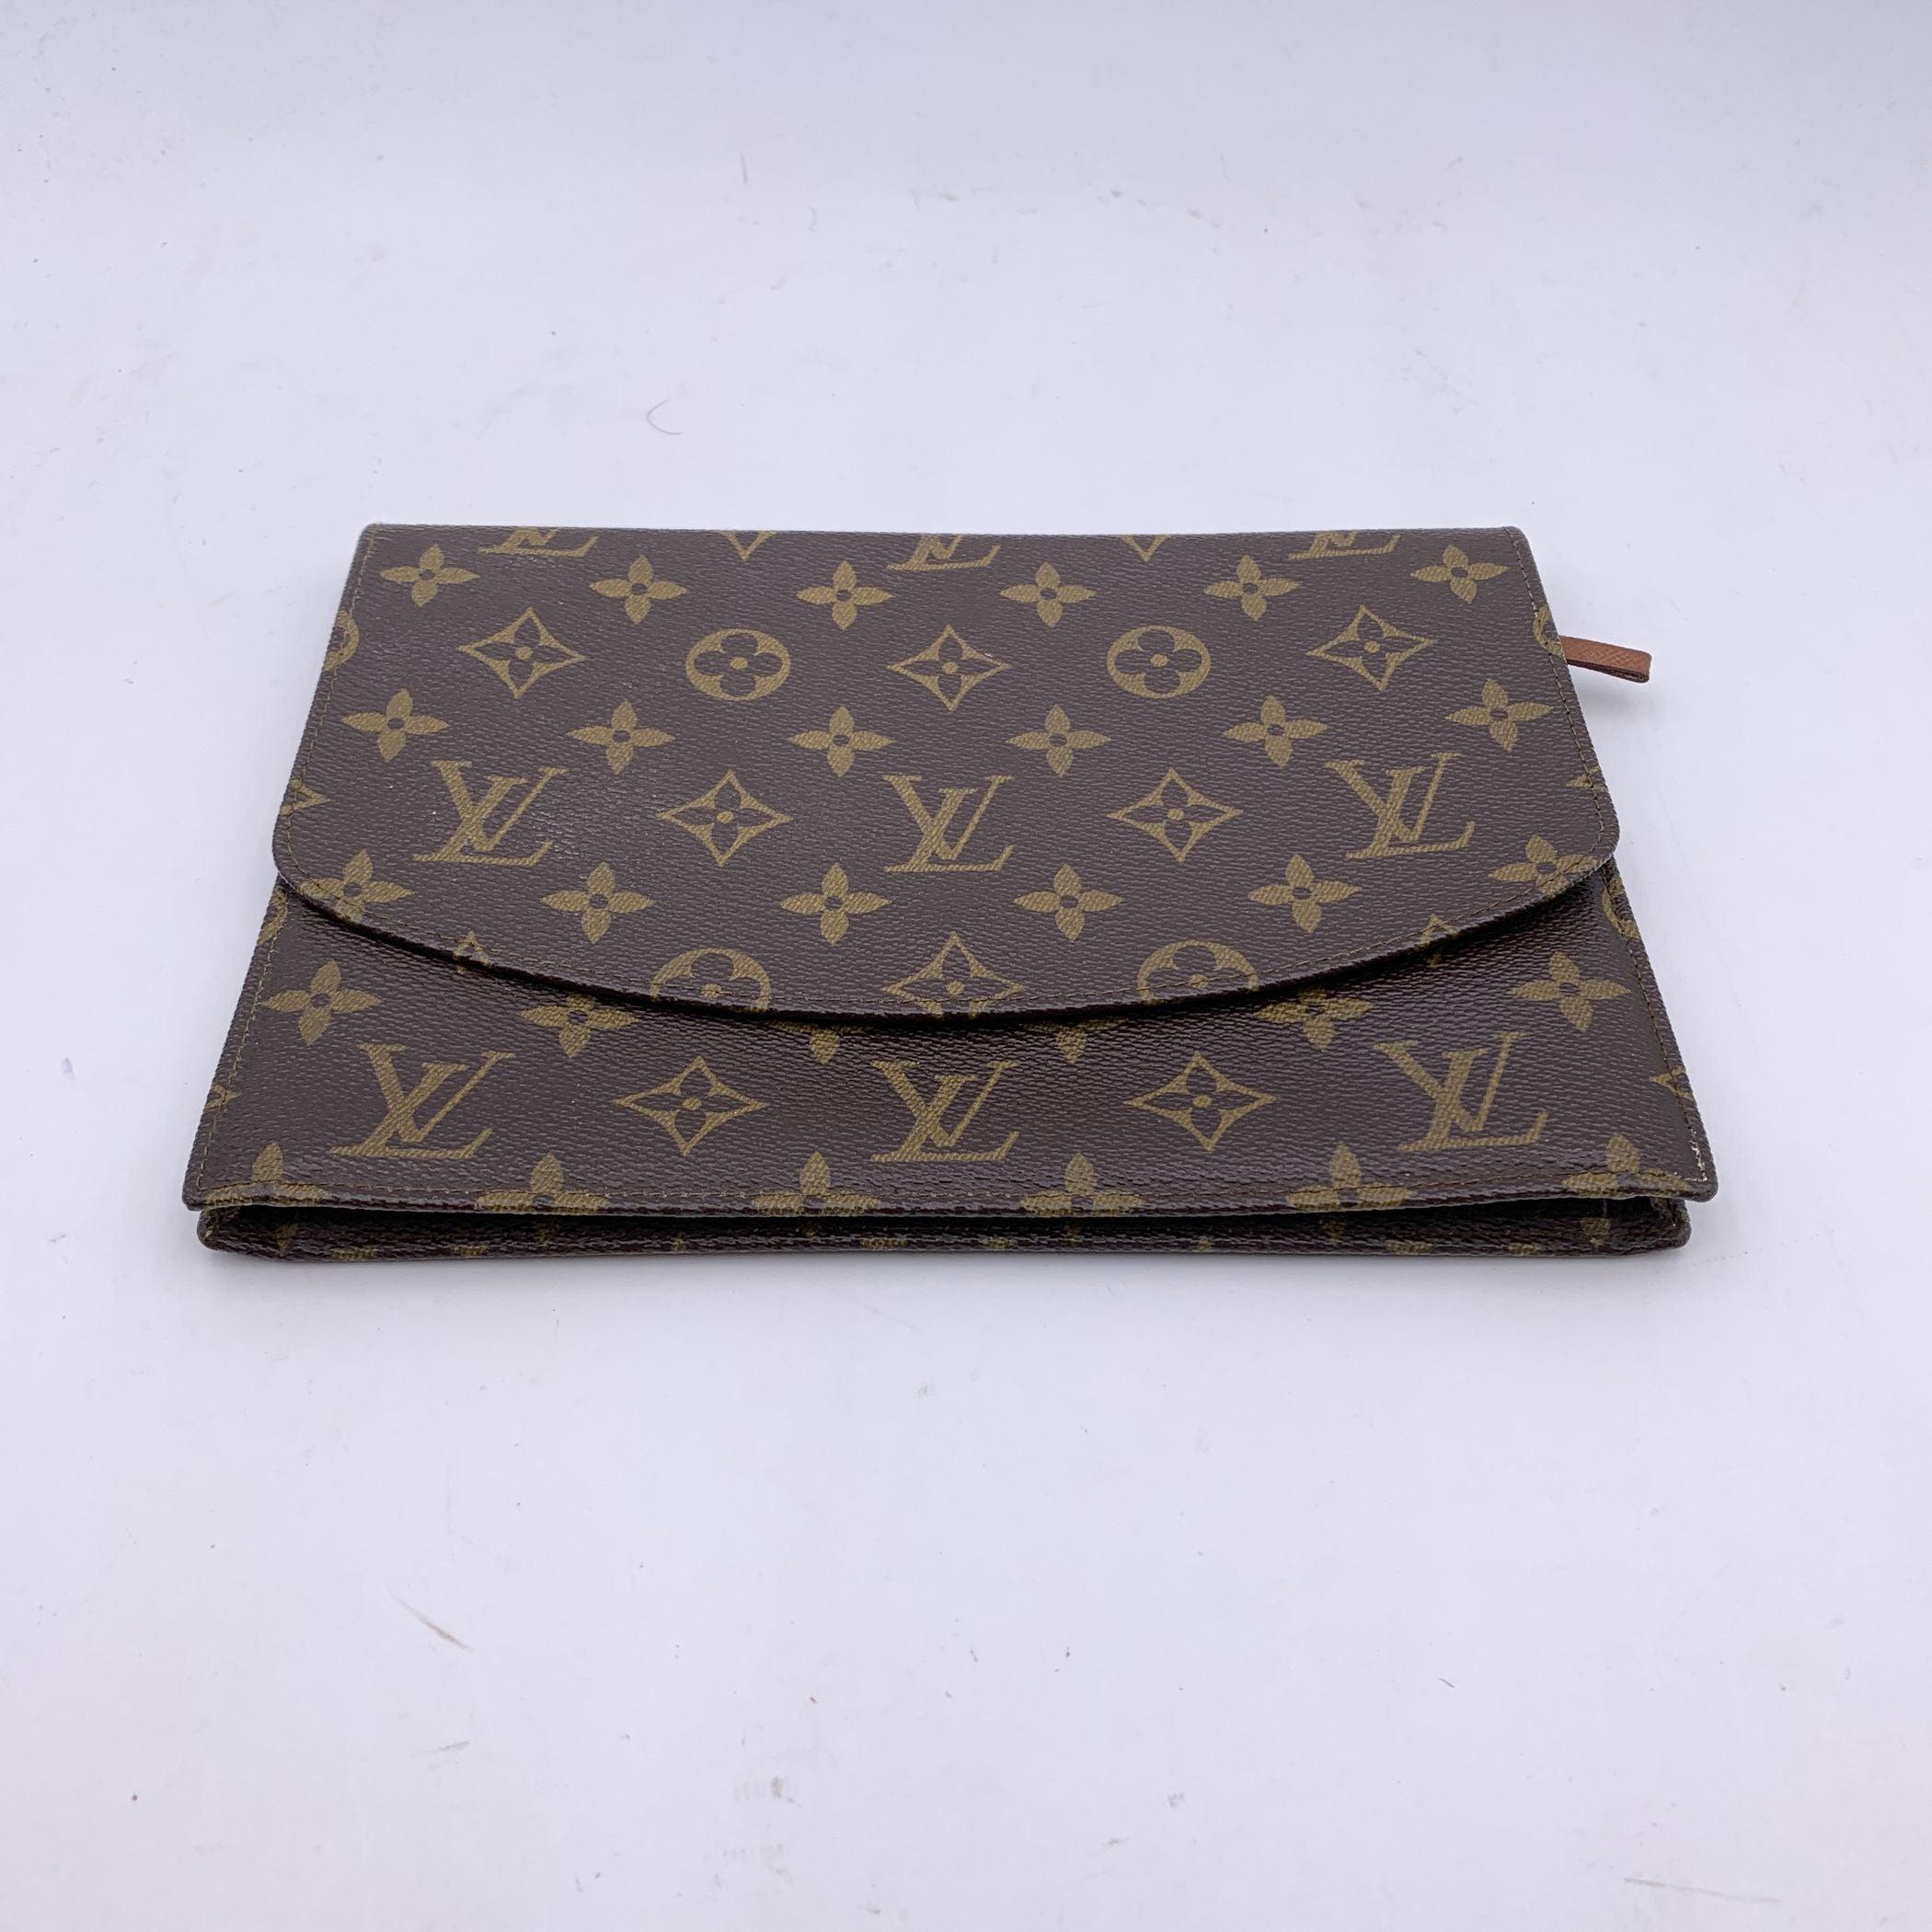 Vintage Louis Vuitton 'Rabat' Clutch Bag aus braunem Monogram Canvas. Klappe mit Knopfverschluss auf der Vorderseite. 1 Tasche mit Reißverschluss unter der Klappe. Innenfutter aus Leder. 1 offene Tasche auf der Rückseite der Klappe. Innenausstattung